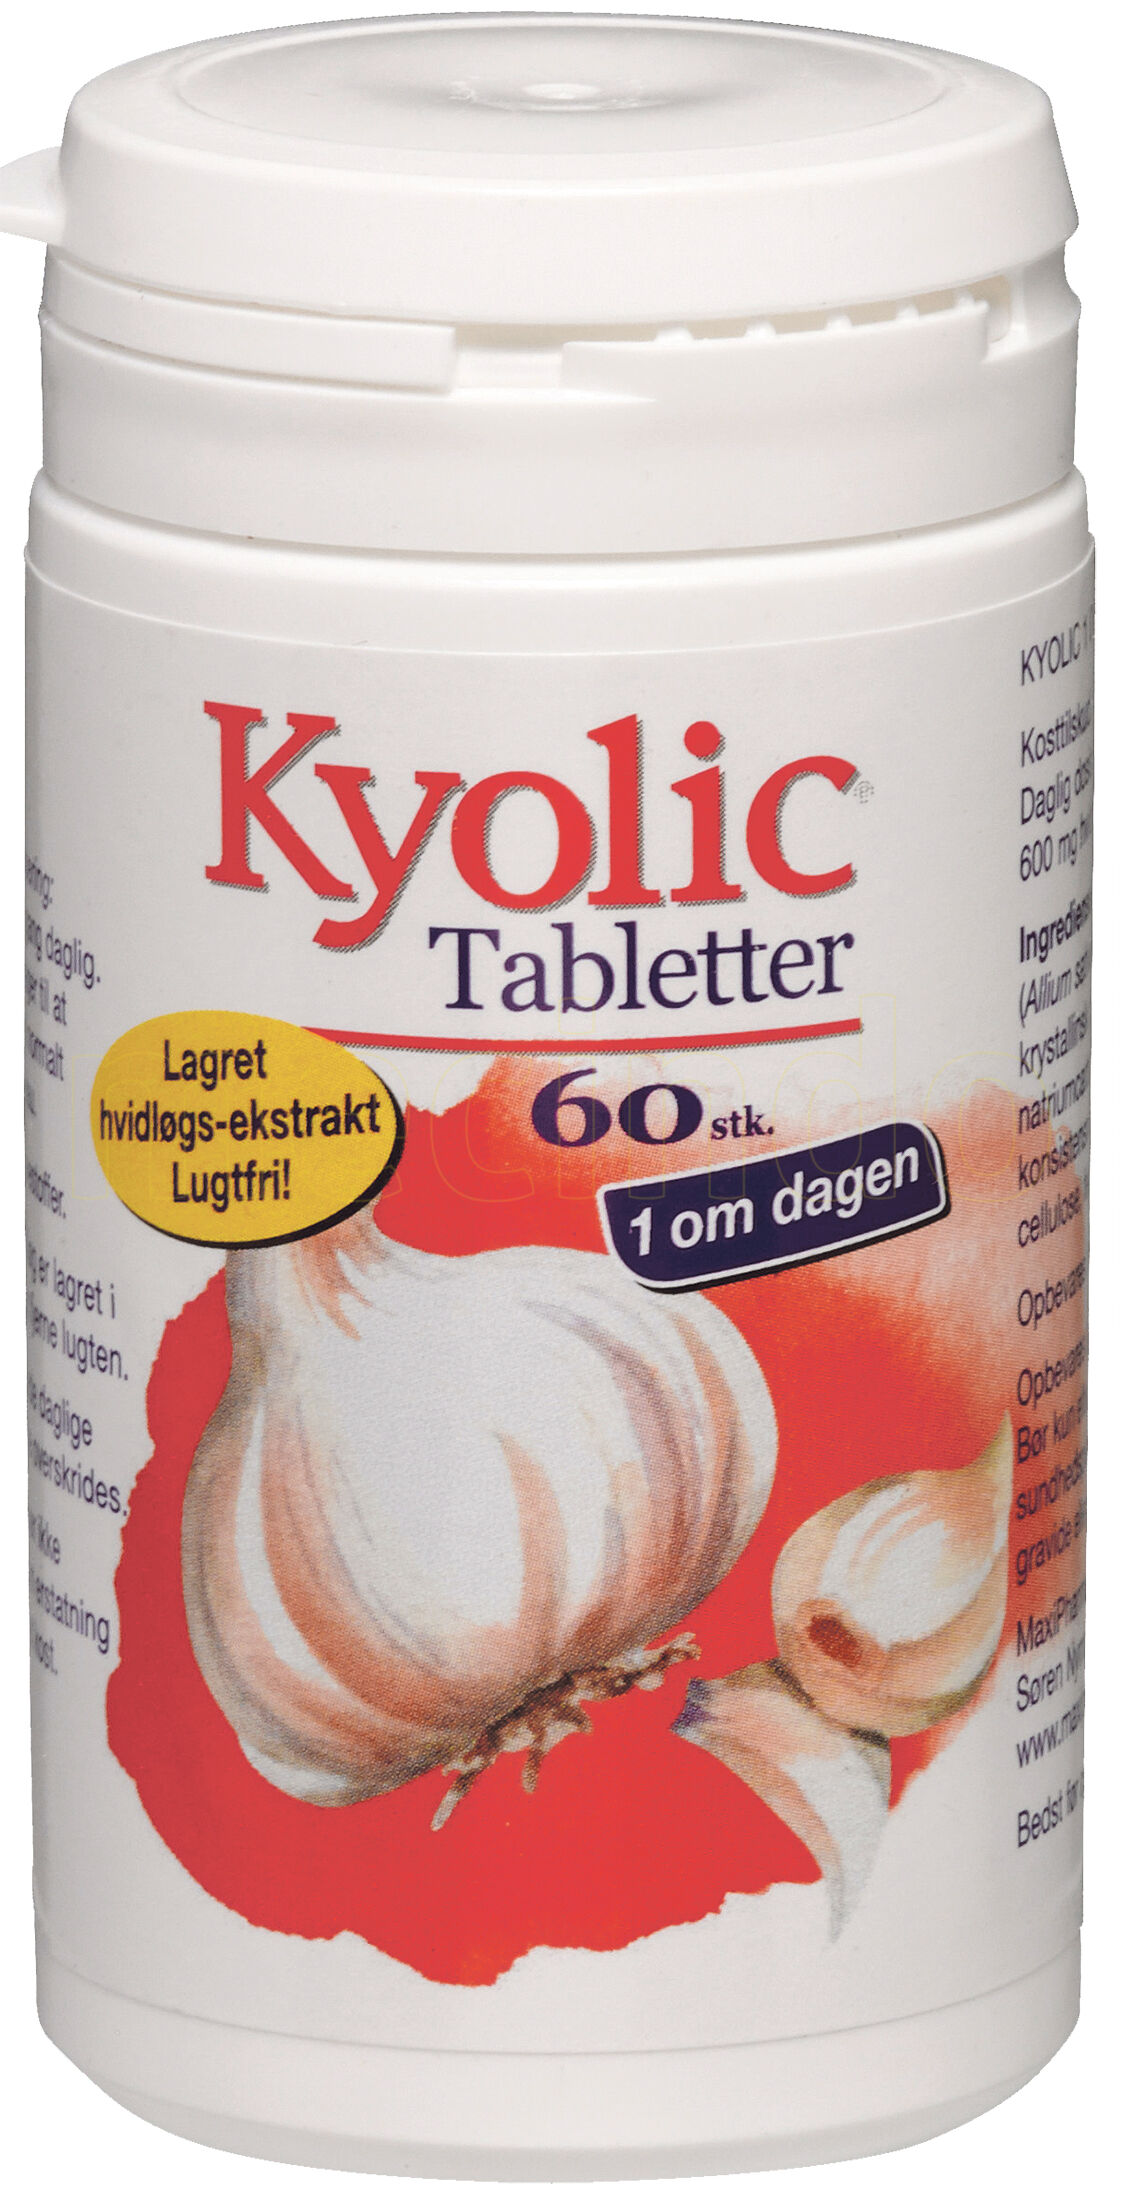 Kyolic 1 Om Dagen - 60 Tabletter